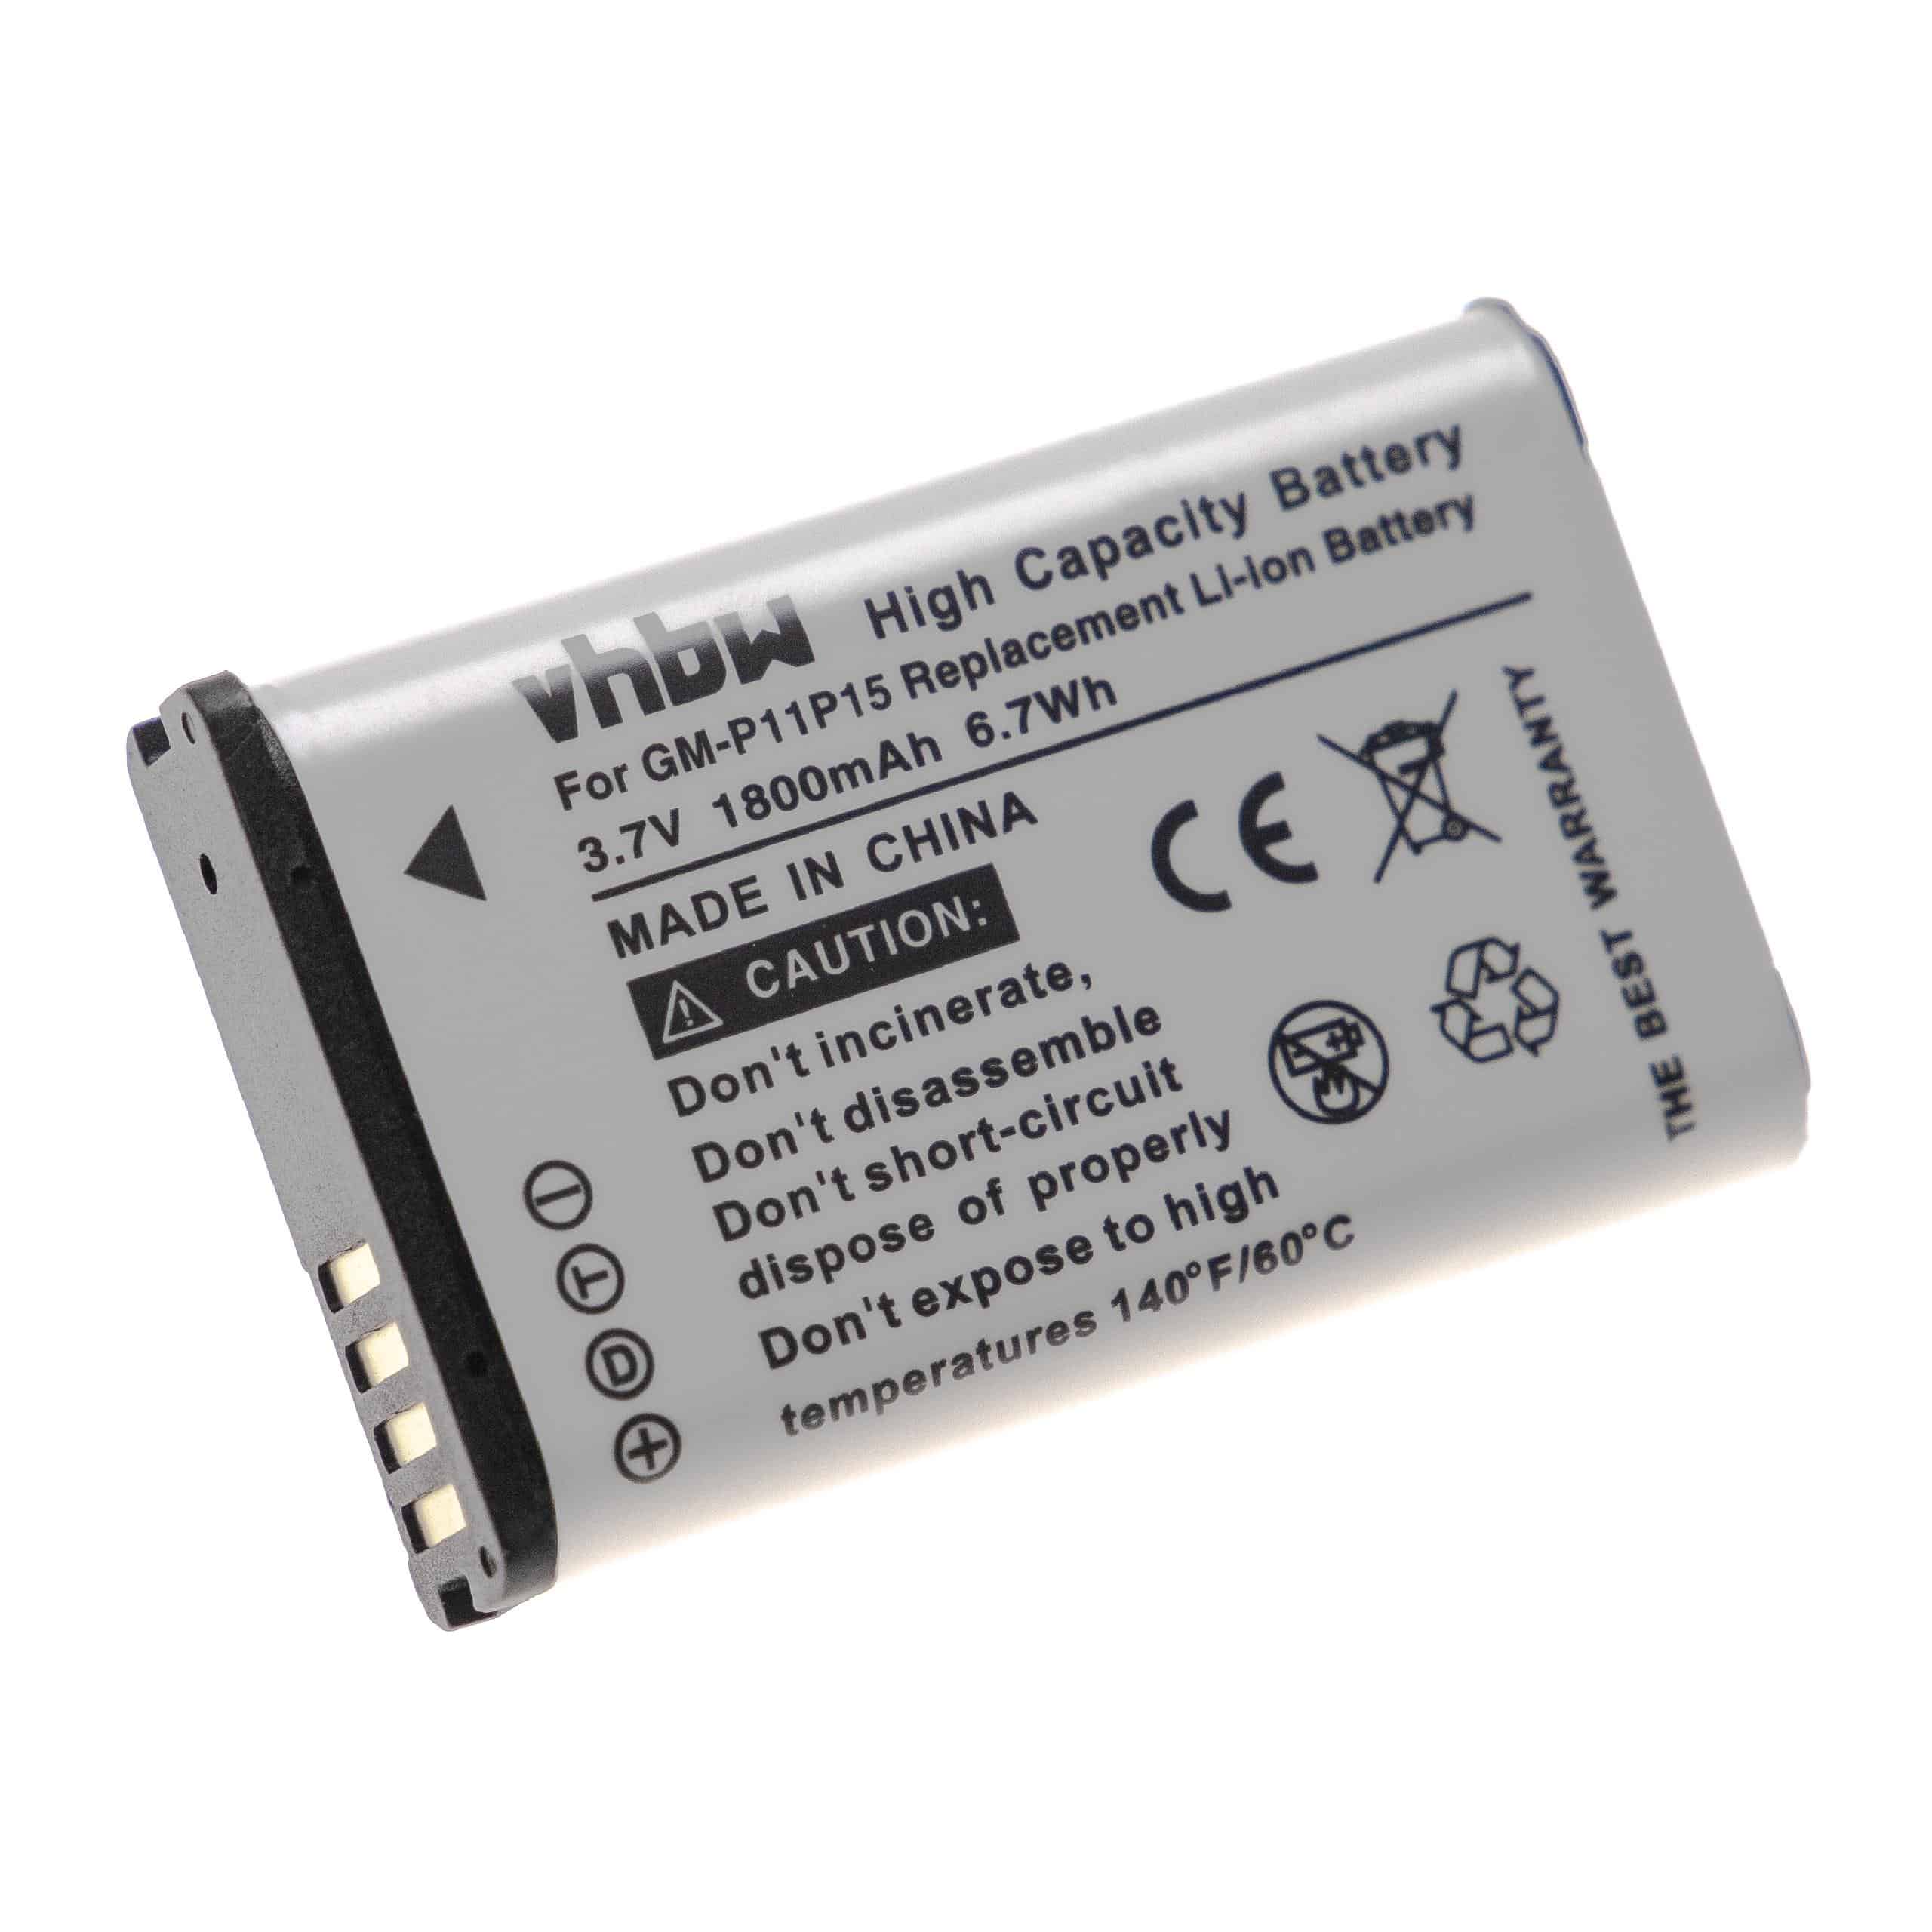 Batterie remplace Garmin 361-00053-00, 010-11599-00, 010-11654-03 pour navigation GPS - 1800mAh 3,7V Li-ion